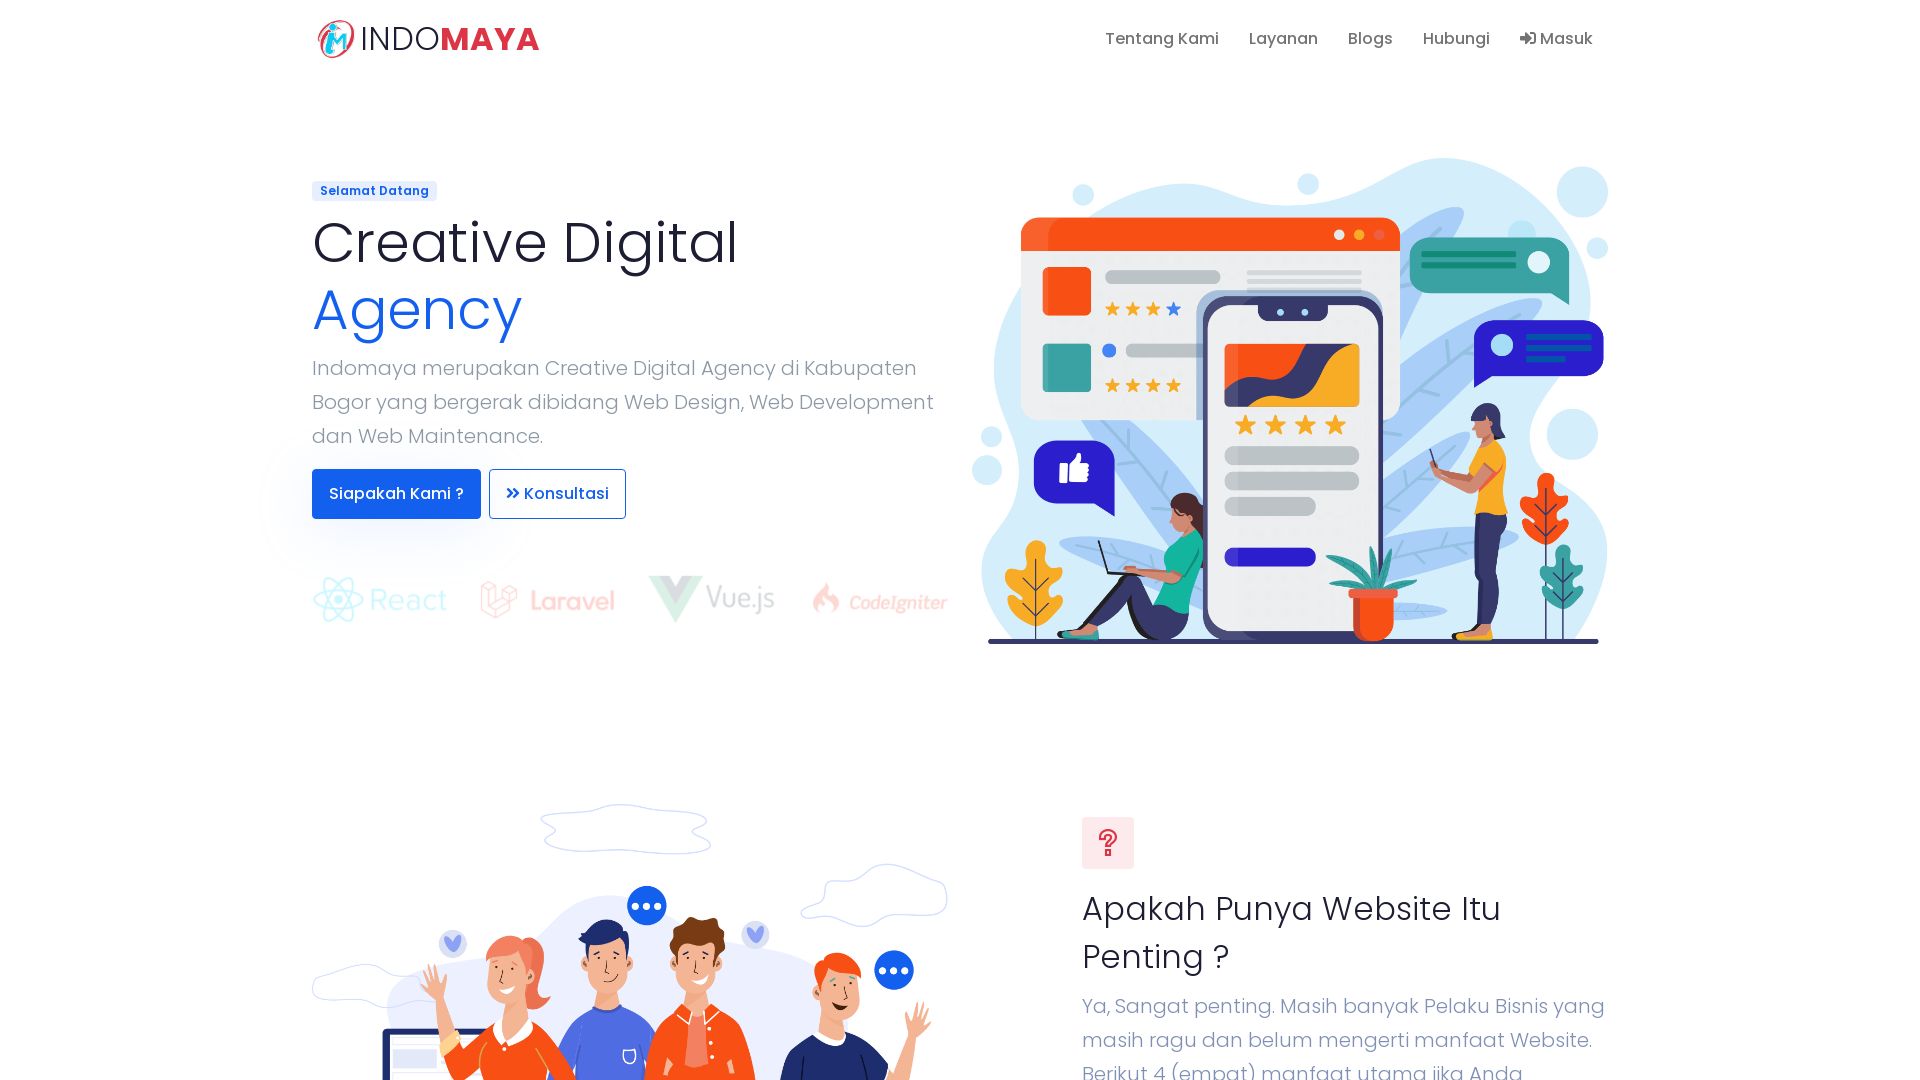 Website status indomaya.net is   ONLINE